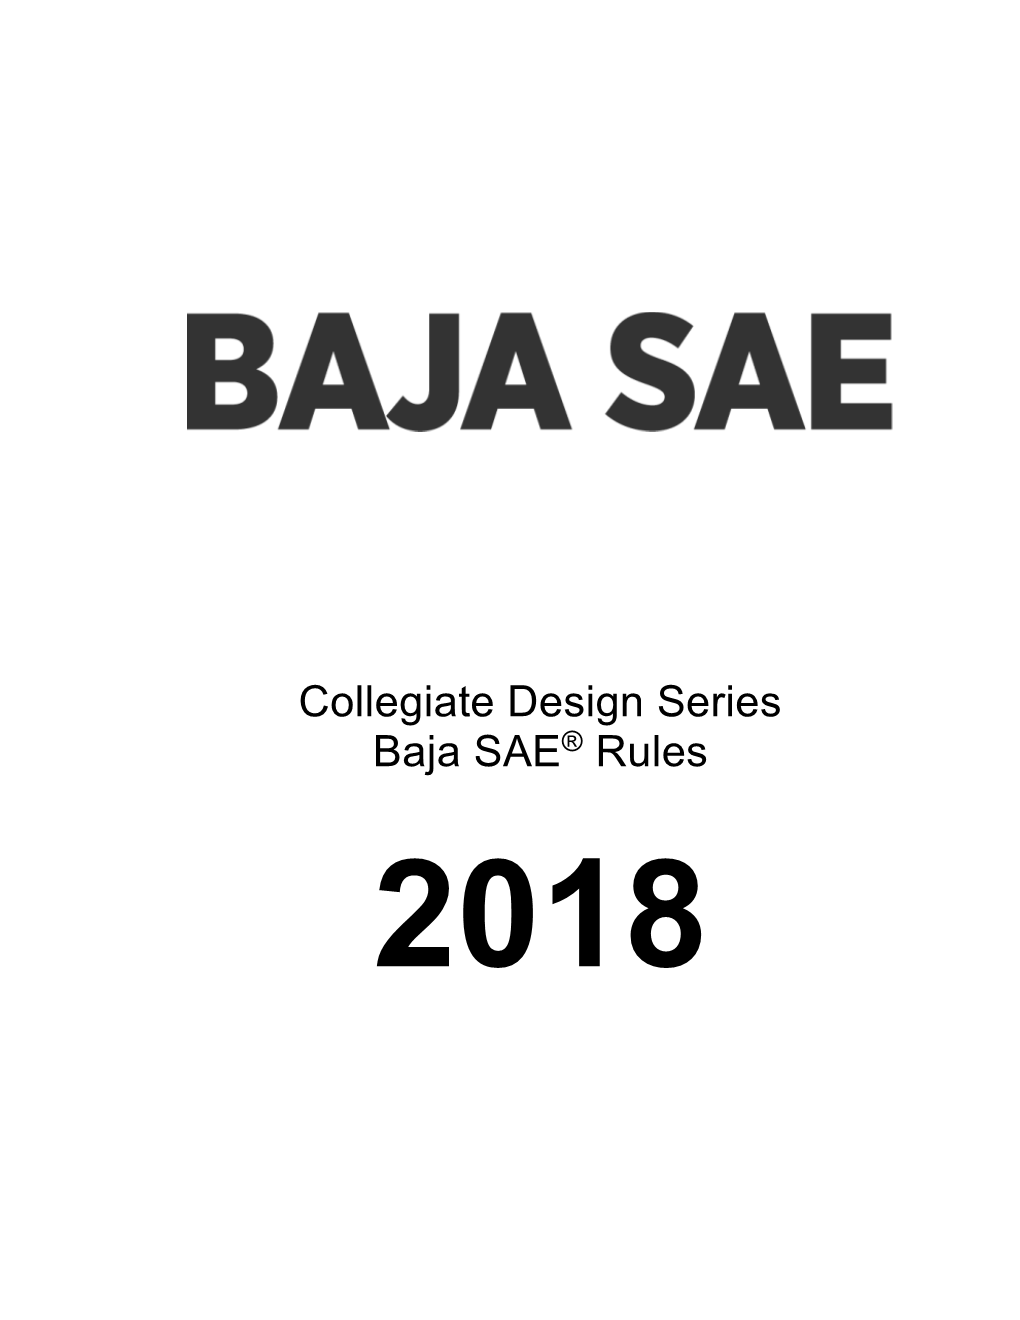 Collegiate Design Series Baja SAE Rules 2018